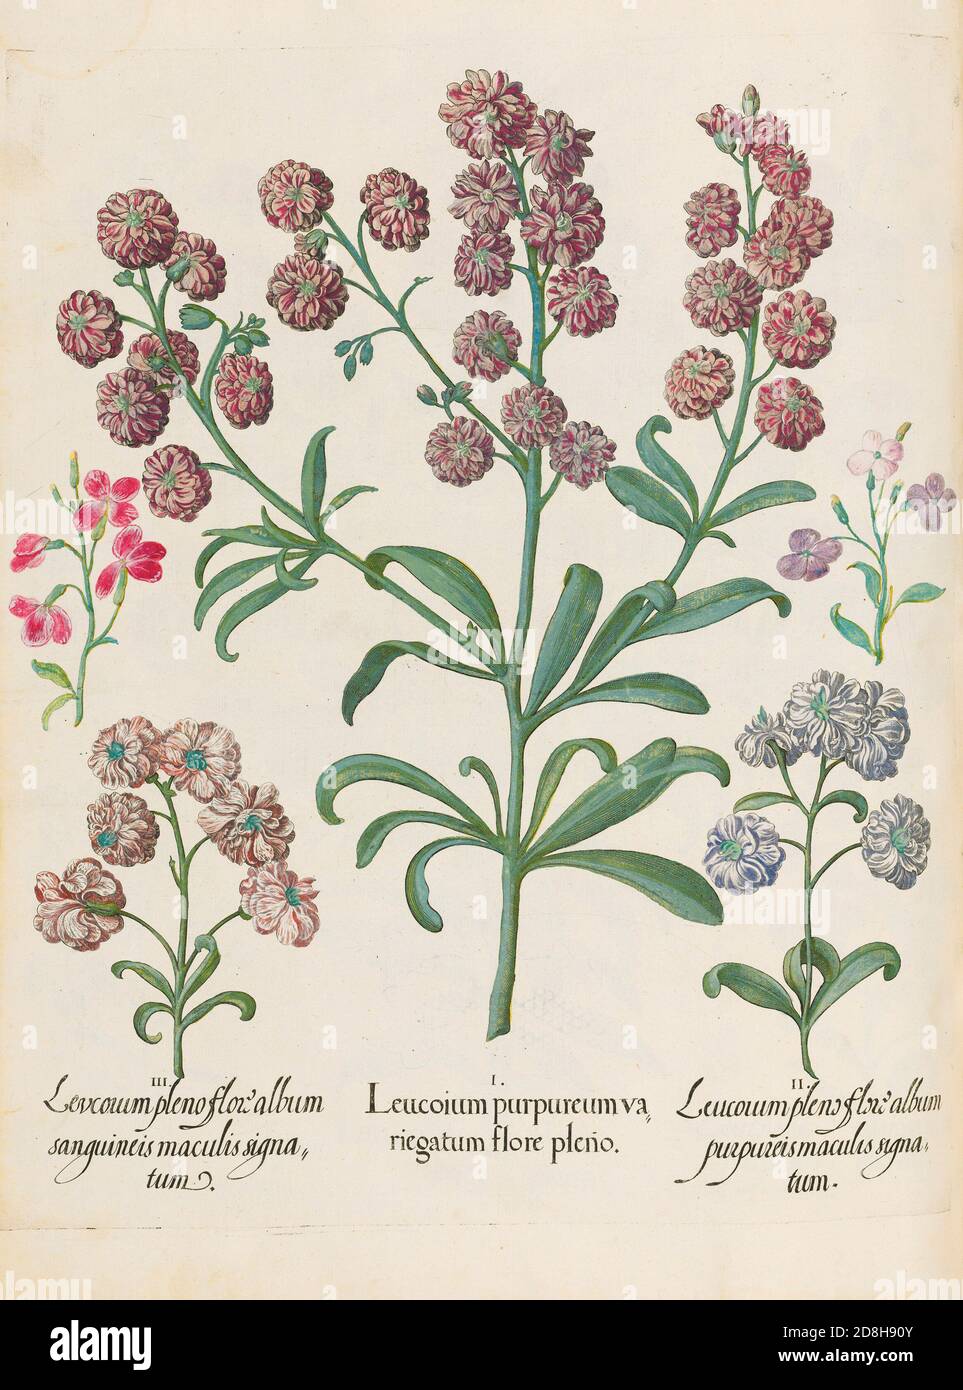 Leucoium purpureumva riegatum flore pleno, botanische Illustration von Basil Besler aus dem 1613 von Besler produzierten Codex The Hortus Eystettensis Stockfoto